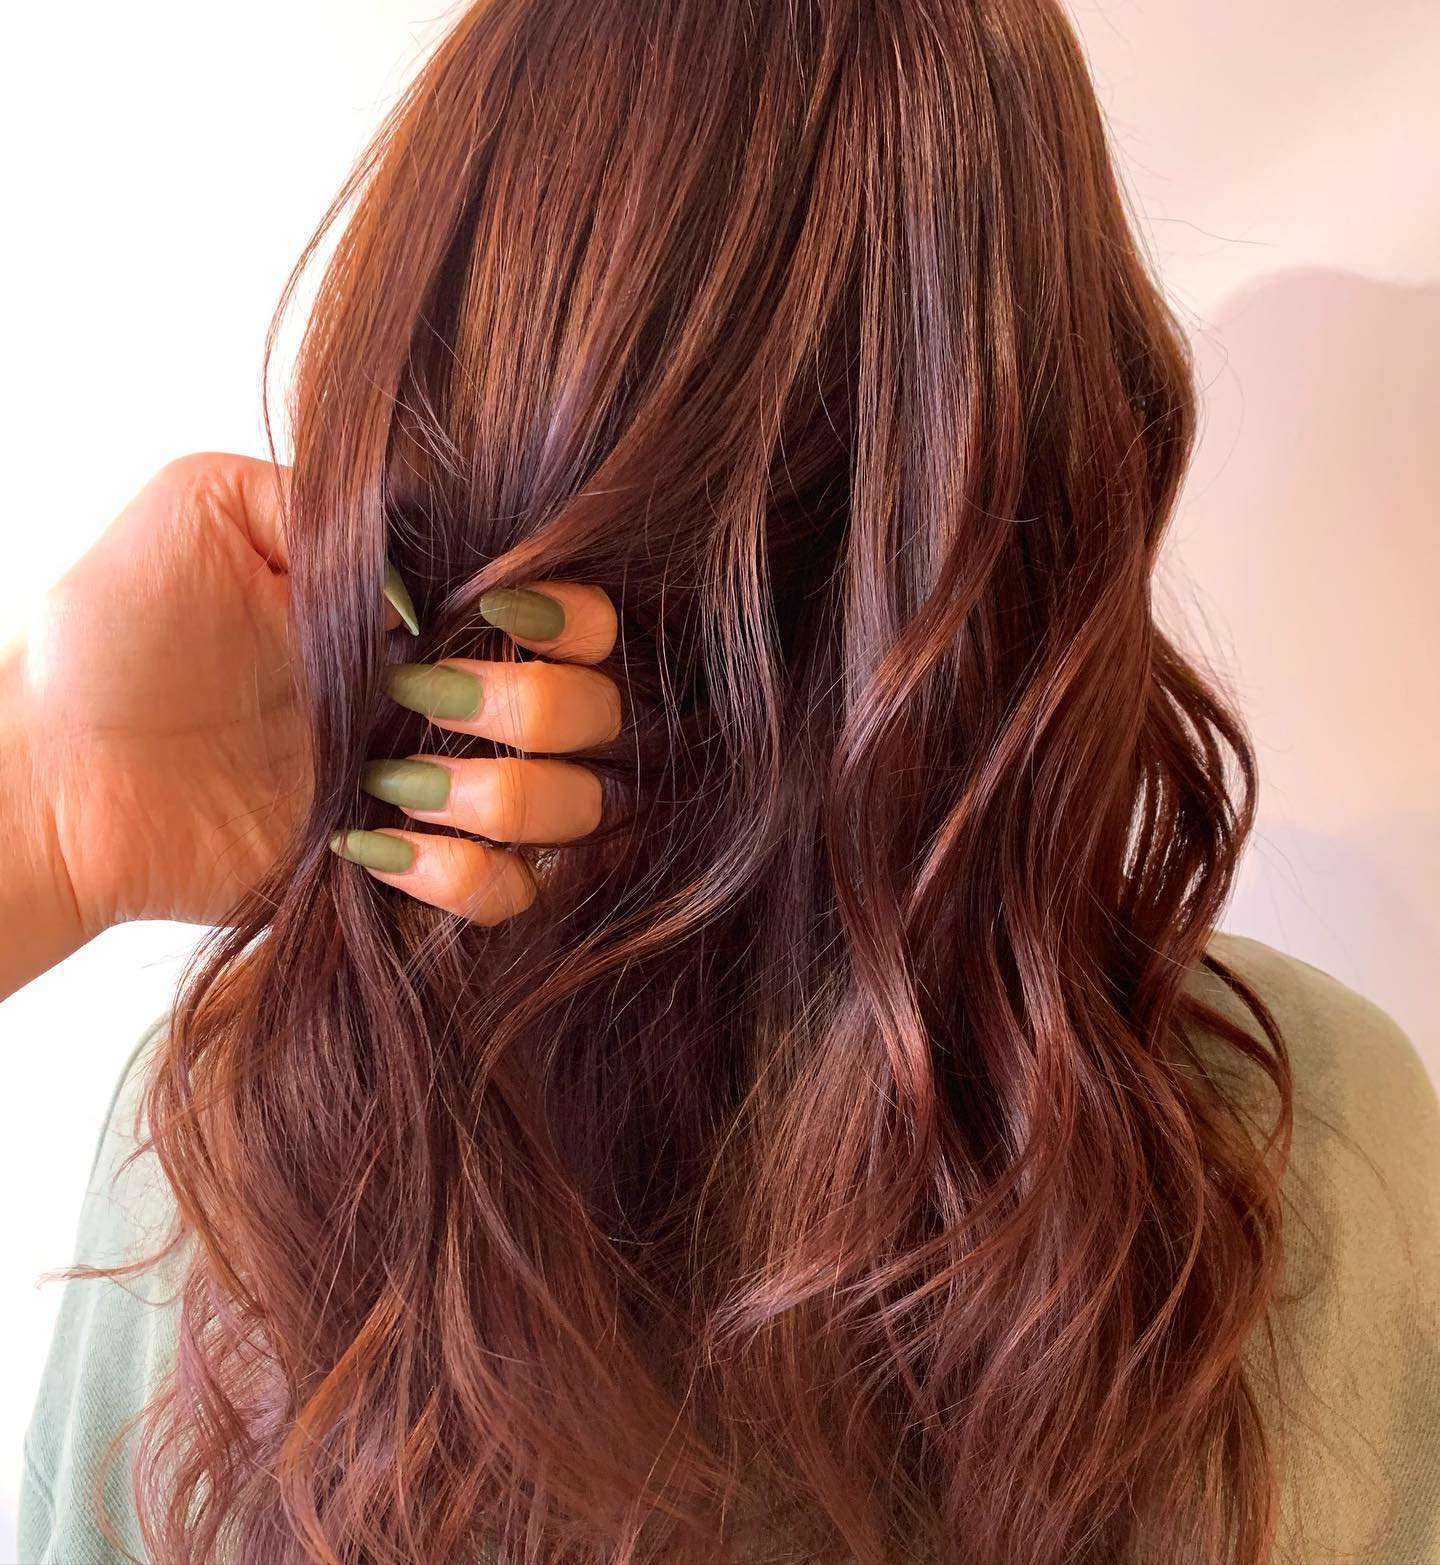 Copper Hair Color Ideas